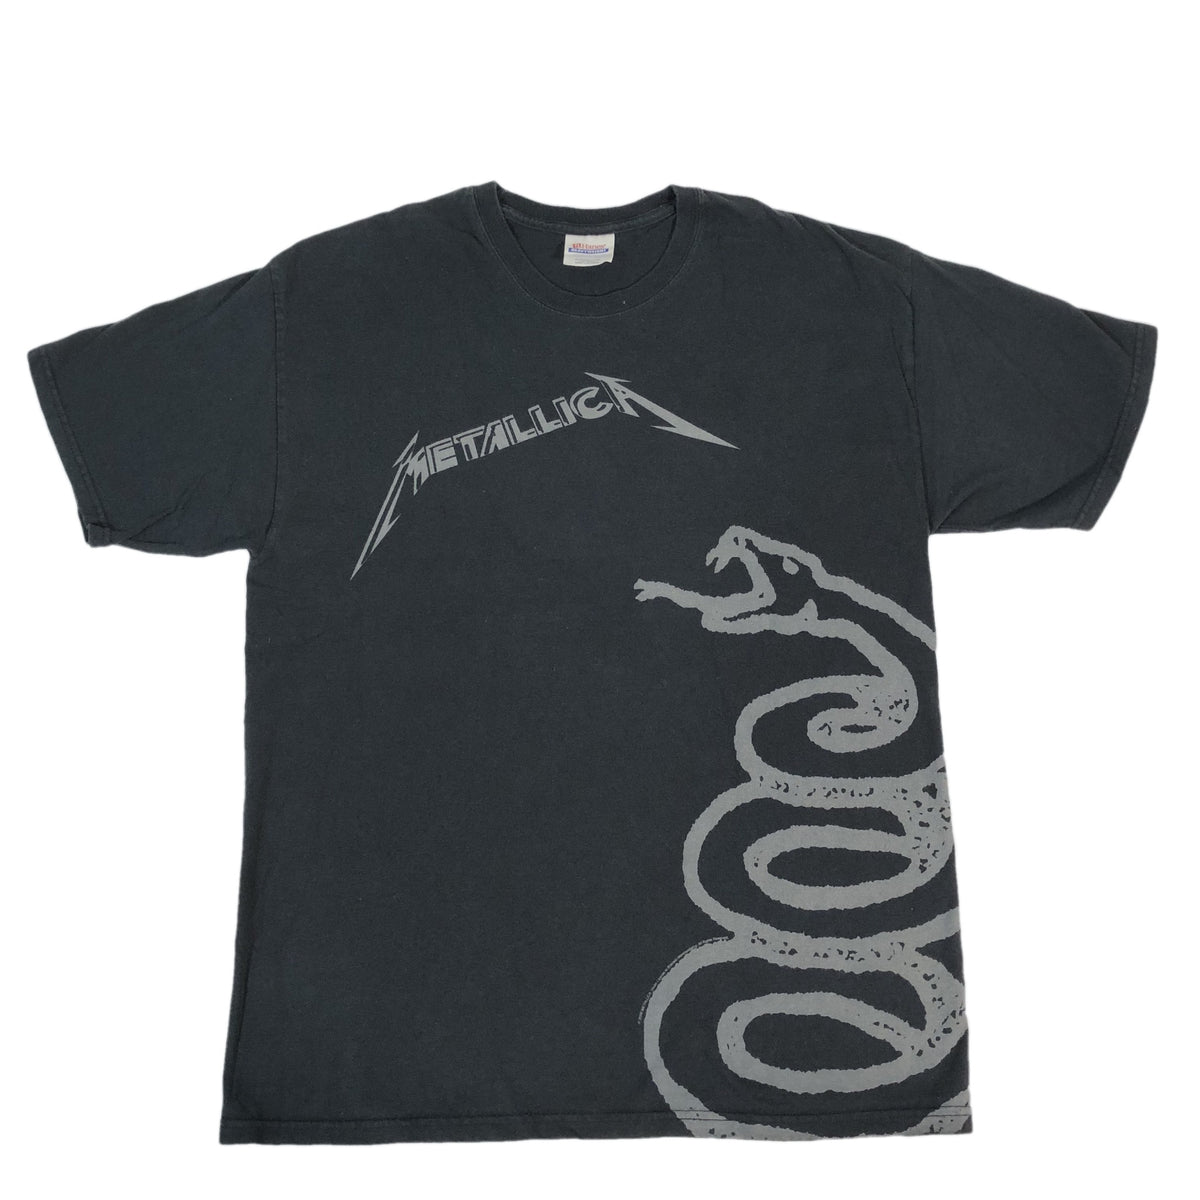 Vintage Metallica &quot;Black Album&quot; T-Shirt - jointcustodydc